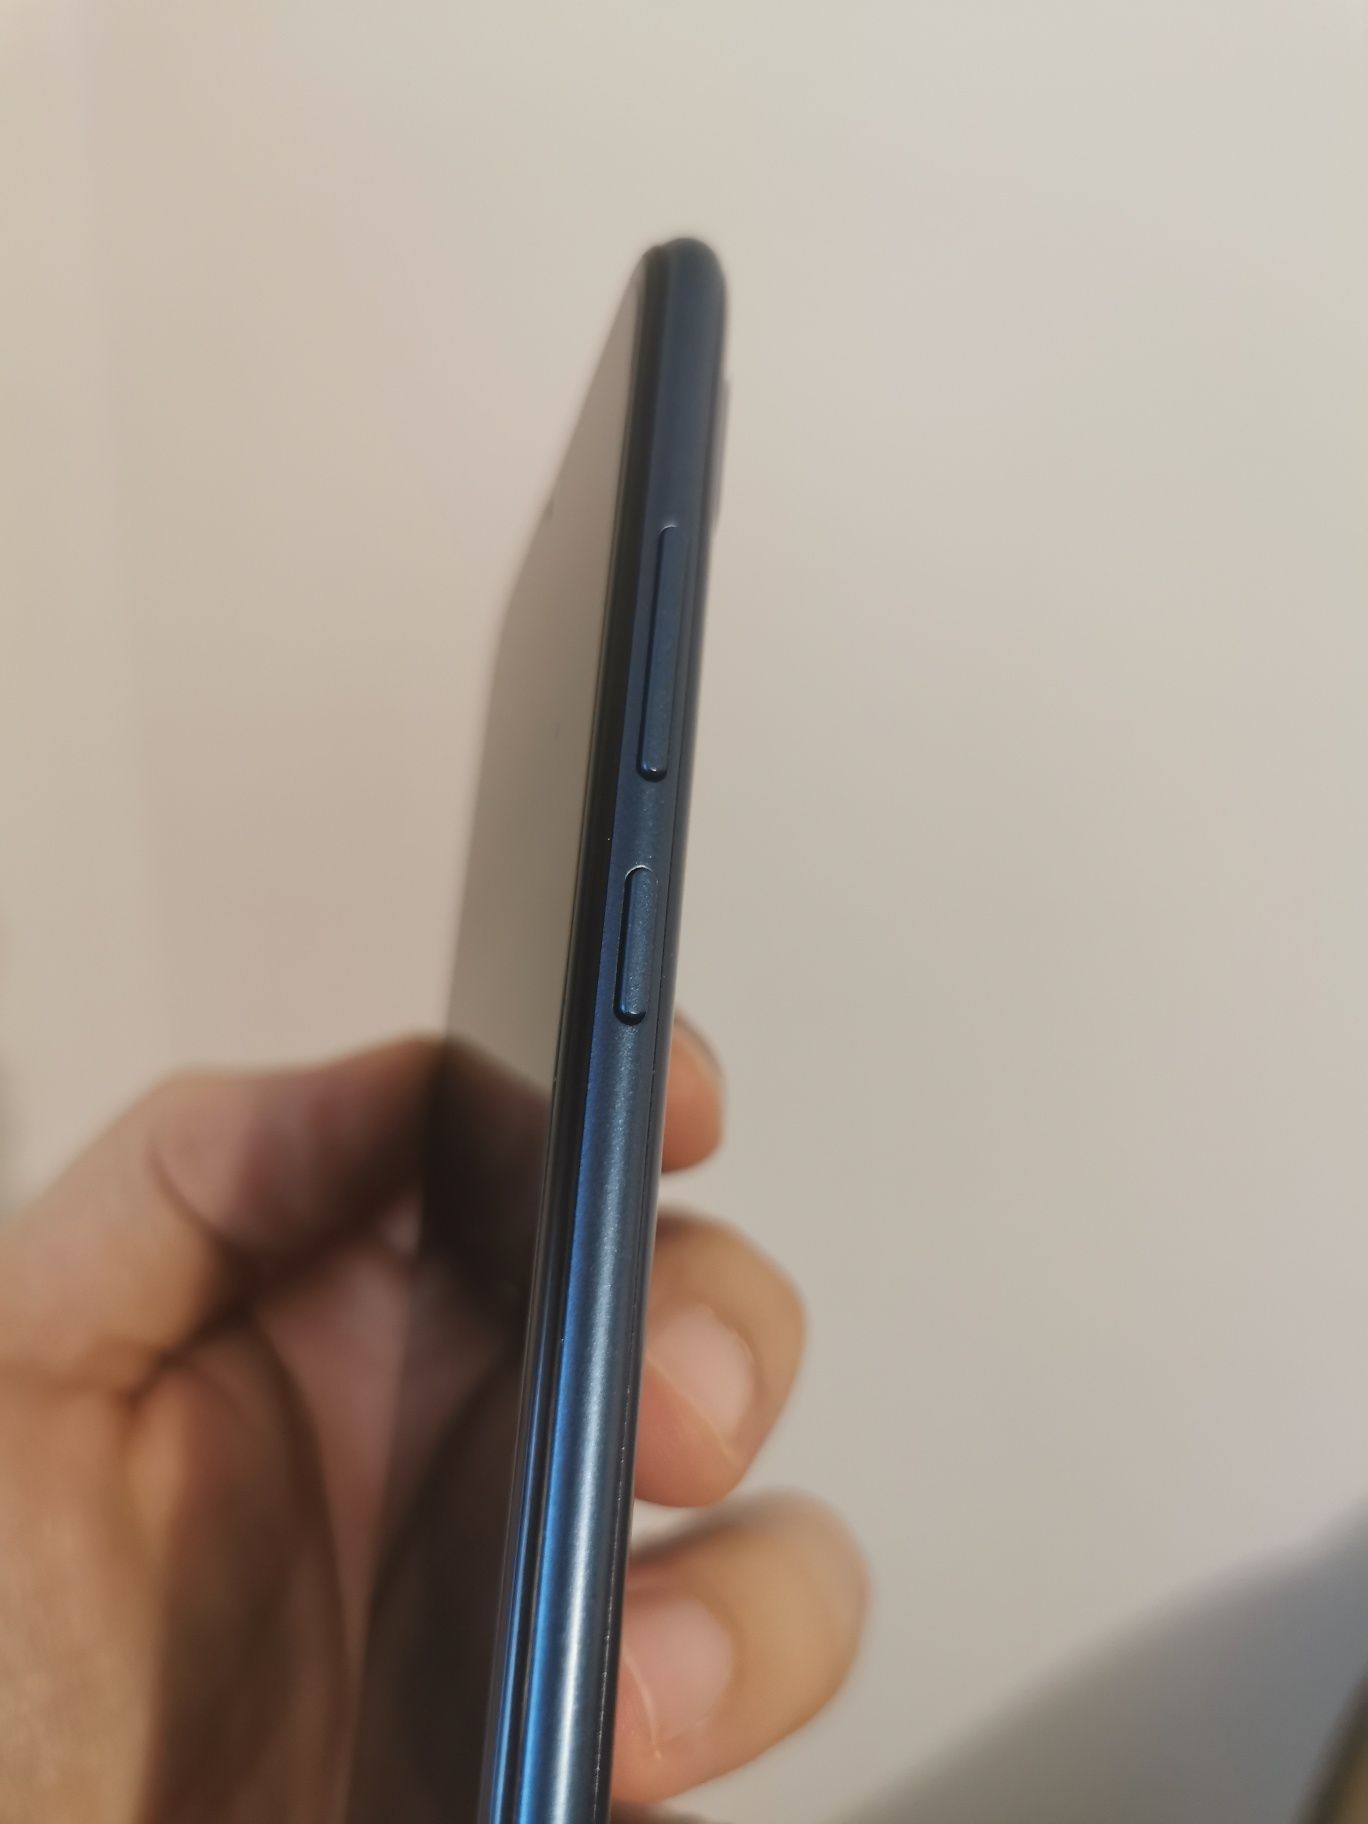 Huawei Y6 2019 32GB Dual SIM 4G 6 inch culoare Sapphire Blue, NOU